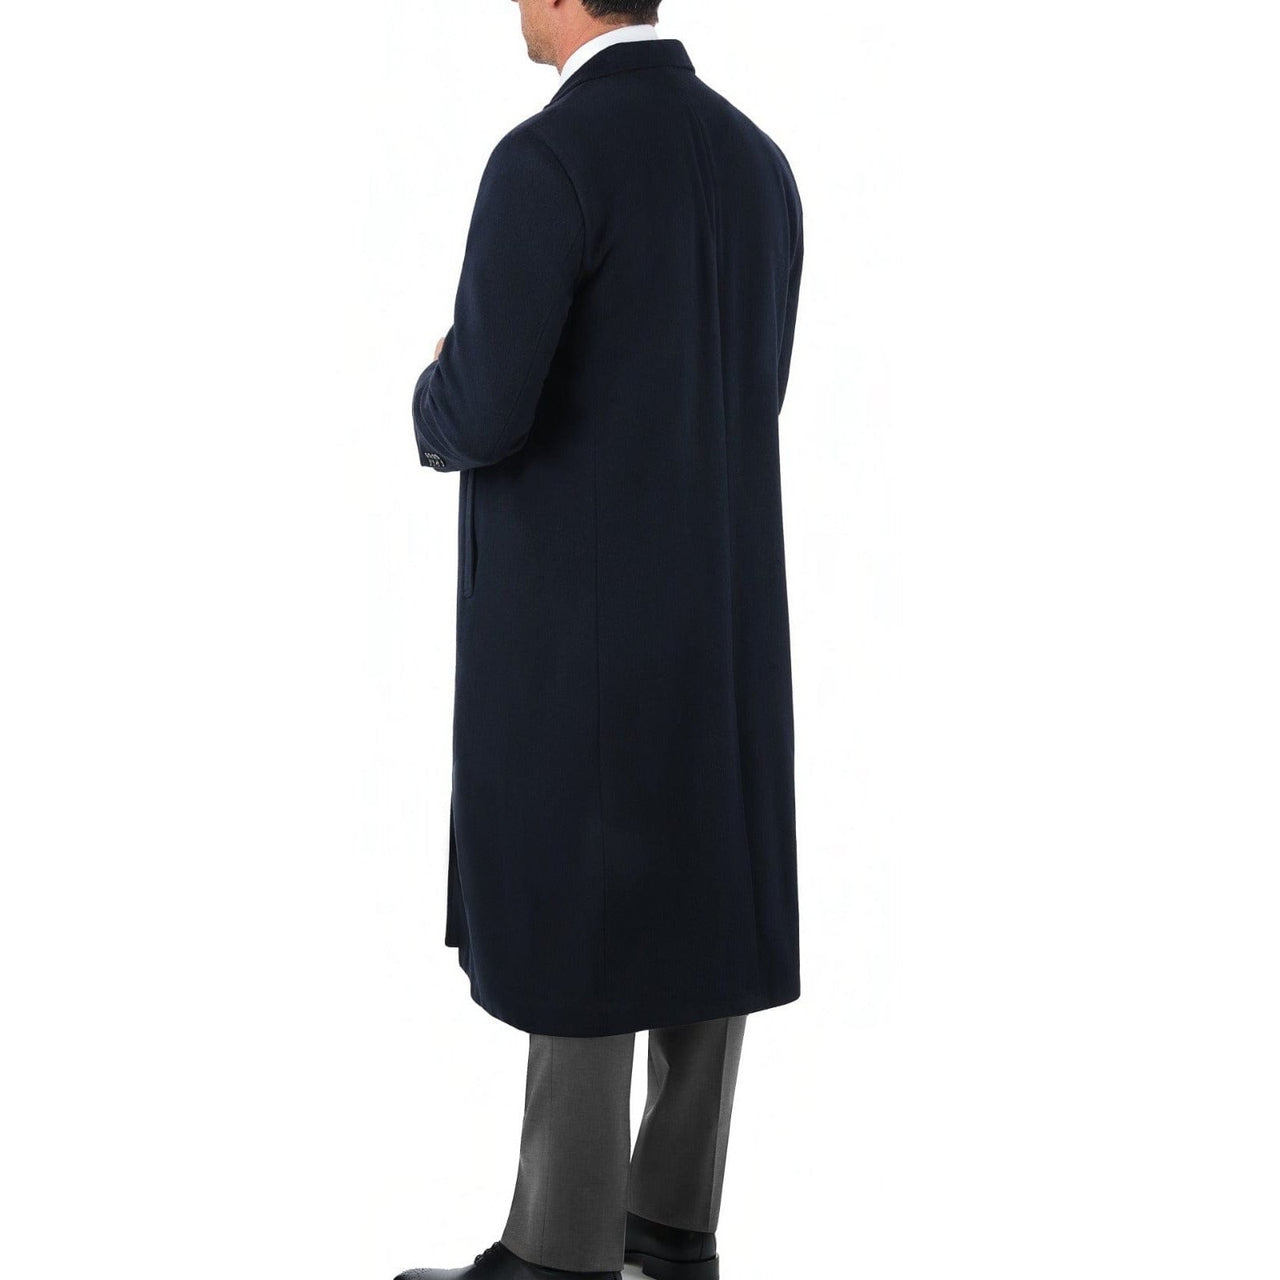 Arthur Black OUTERWEAR Men's Regular Fit Navy Blue Full Length Wool Cashmere Overcoat Topcoat